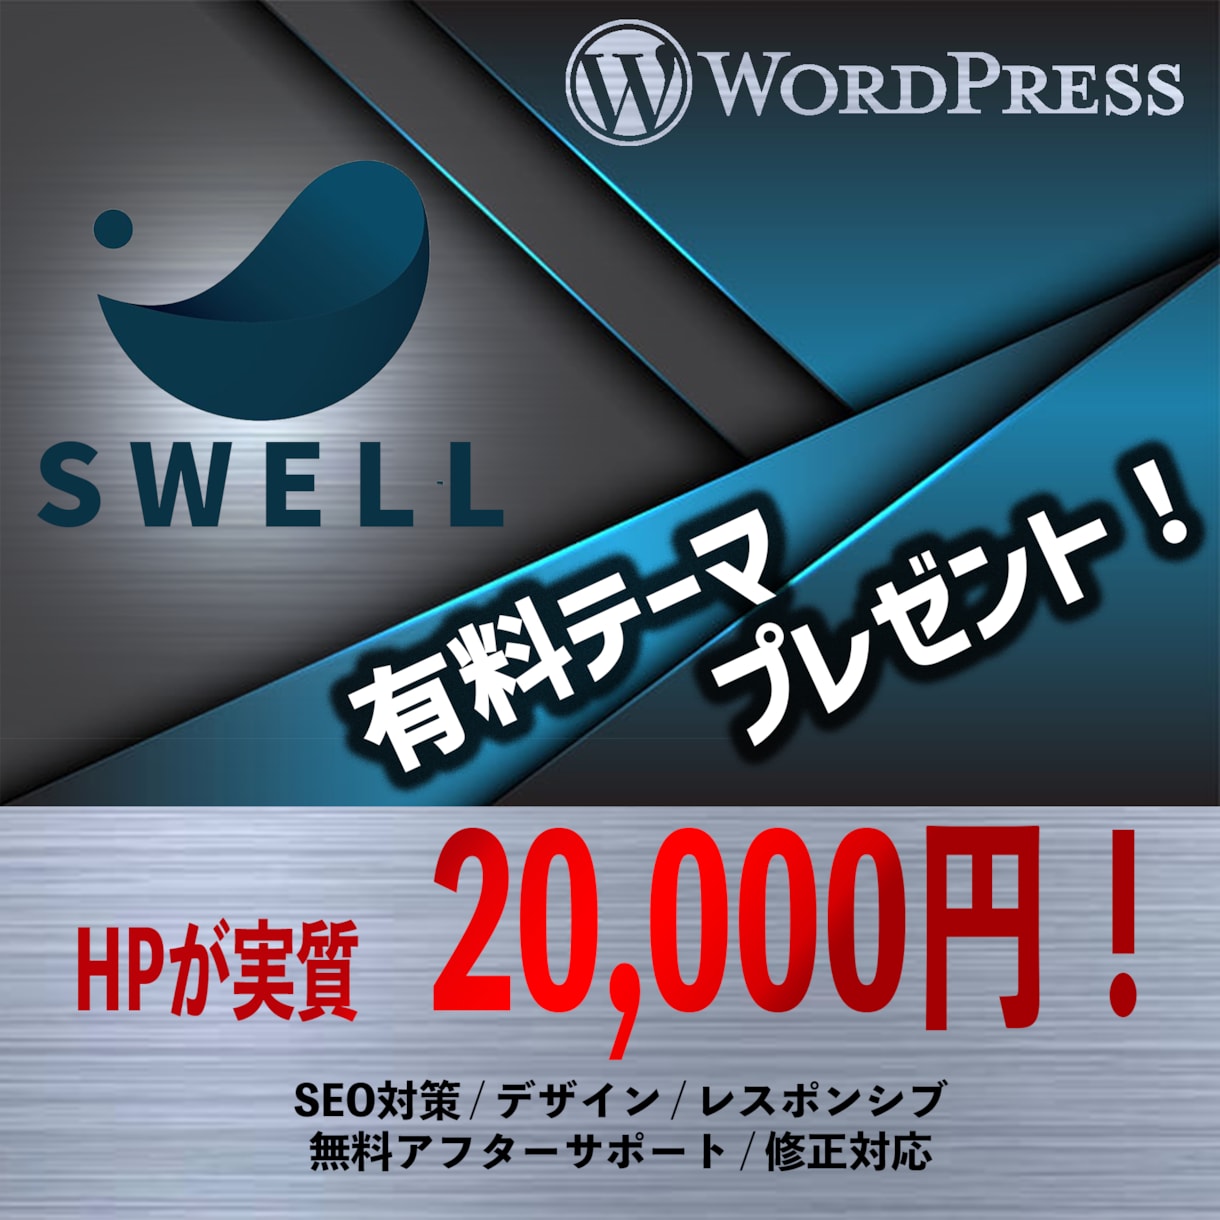 💬ココナラ｜実質20,000円★ワードプレスでHPを制作します   UNIxy Design  
                5.0
       …